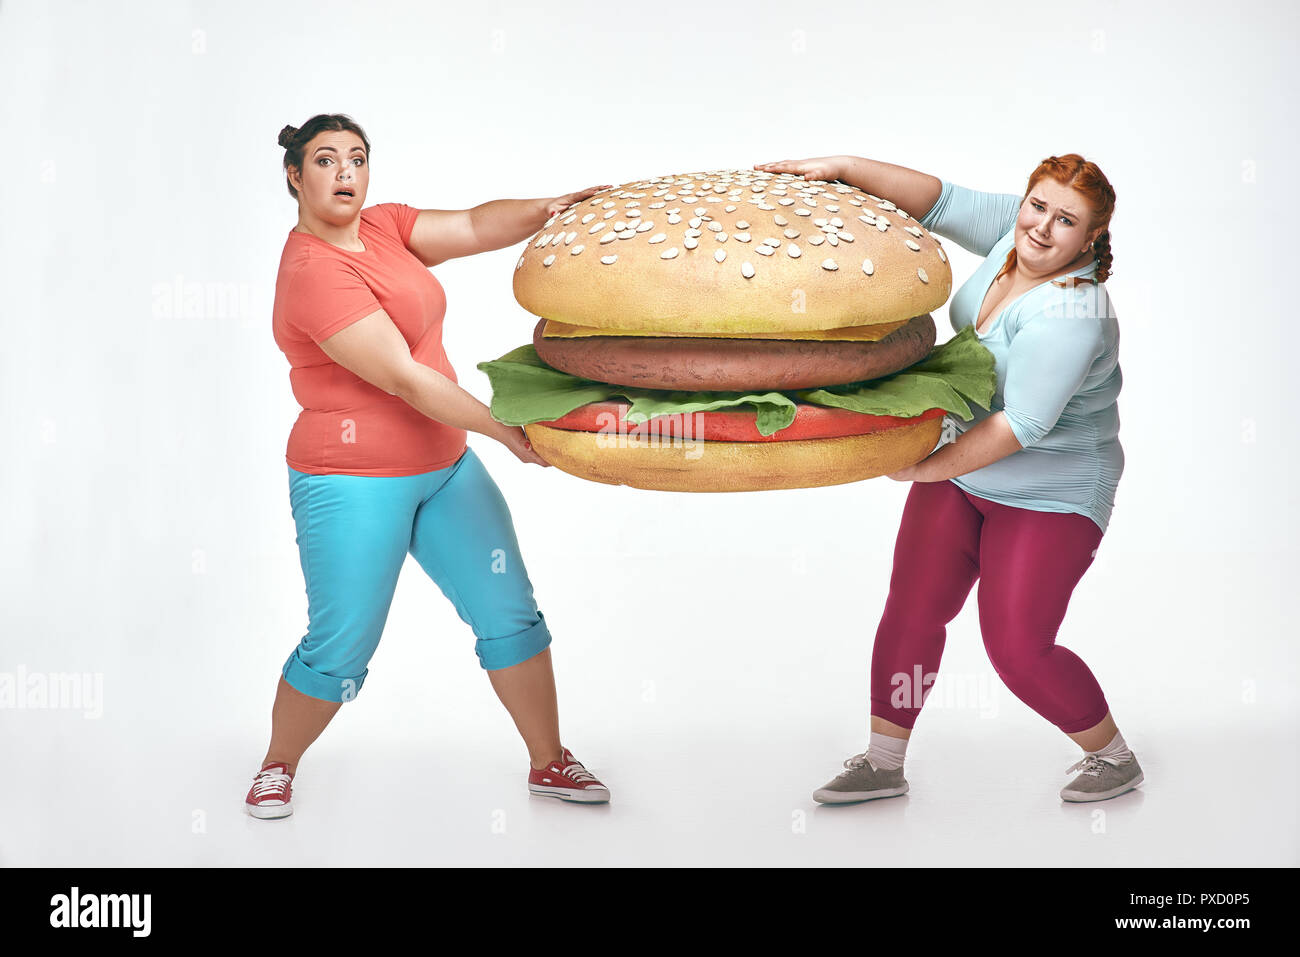 Divertente immagine di divertenti, chubby donne su sfondo bianco. Due donne sono in possesso di un enorme panino Foto Stock